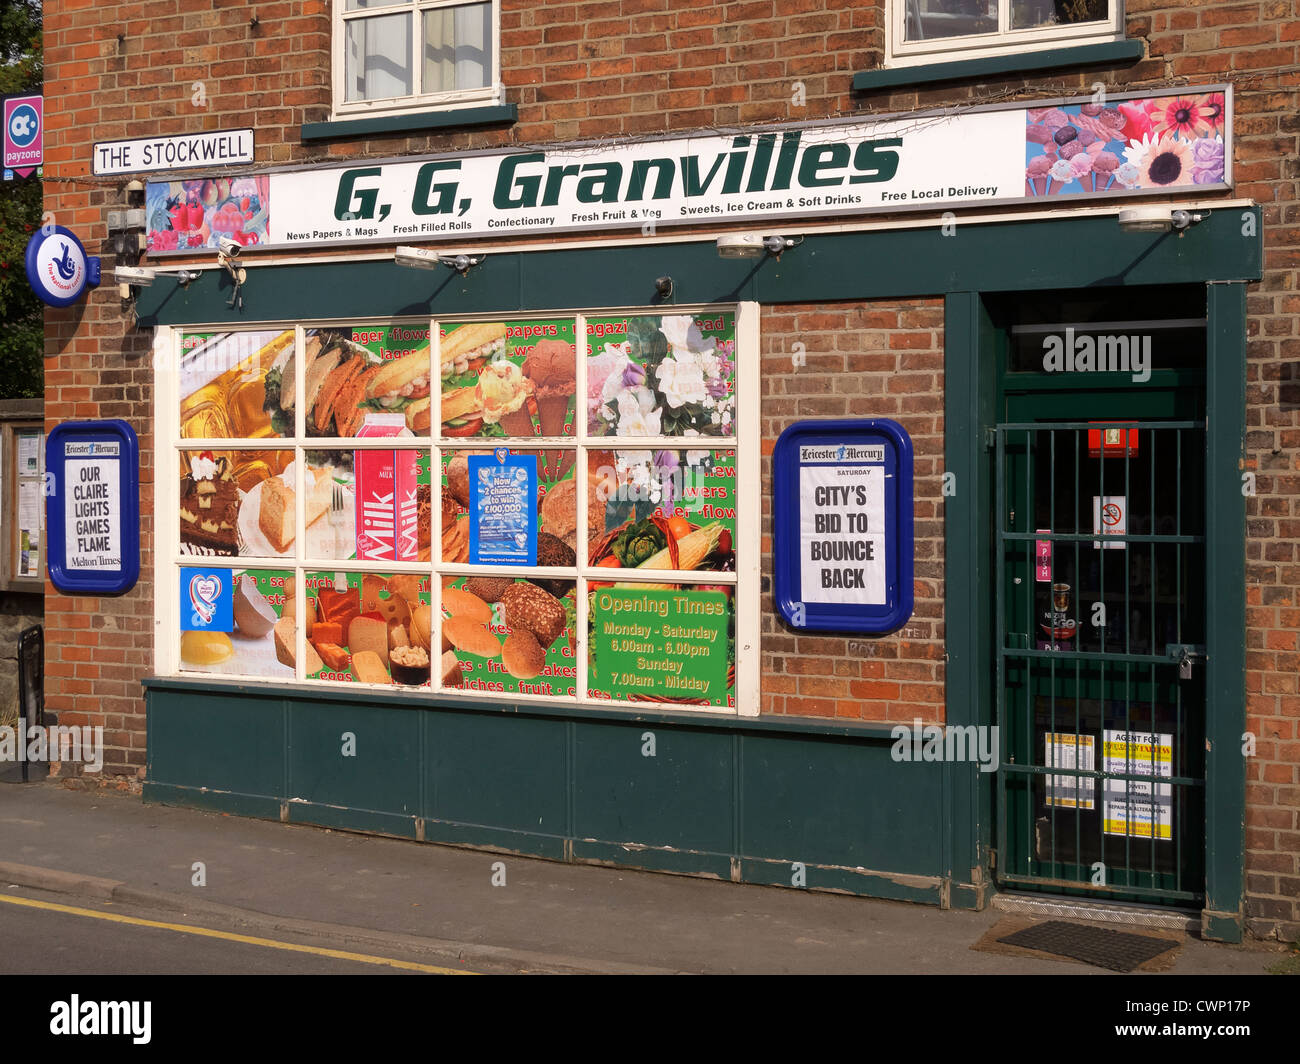 La boutique sign amusant inspiré par la série TV "ouvrir toutes les heures où Ronnie Barker bégaie son coin shop Nom de l'assistant de Granville Banque D'Images